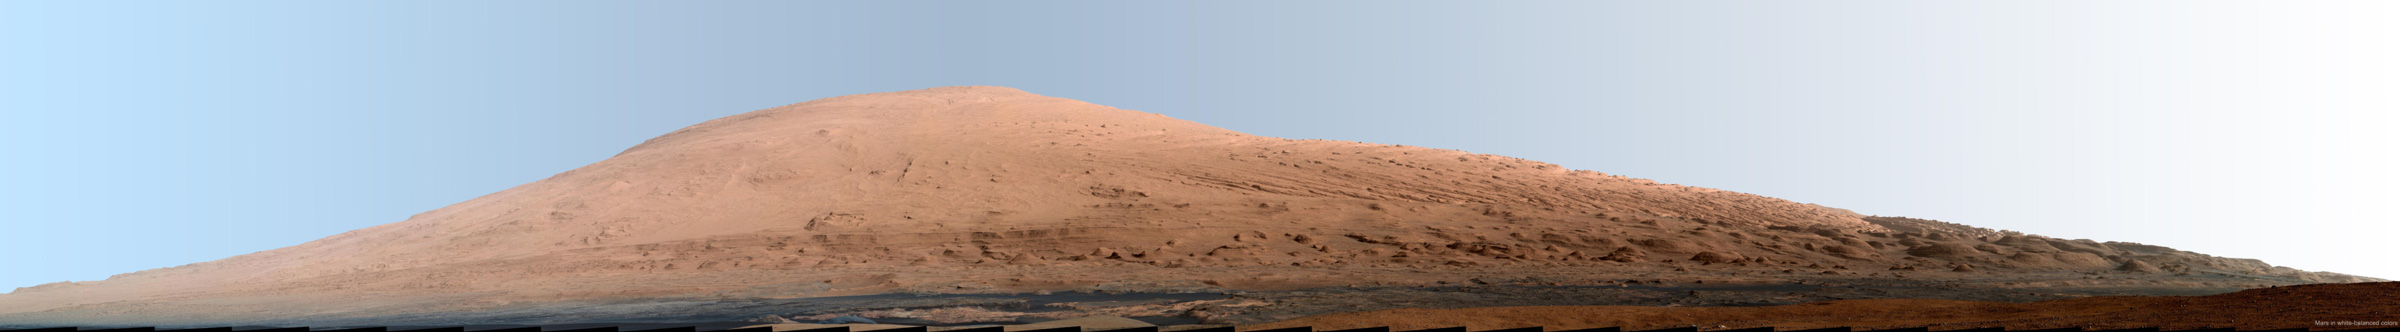 Le mont Sharp, dont l’origine est inconnue, est l’objet d’étude privilégié de Curiosity. On sait seulement que les paysages environnants de cette montagne ont été façonnés quand la Planète rouge était beaucoup plus chaude et humide qu'aujourd'hui. © Nasa, JPL